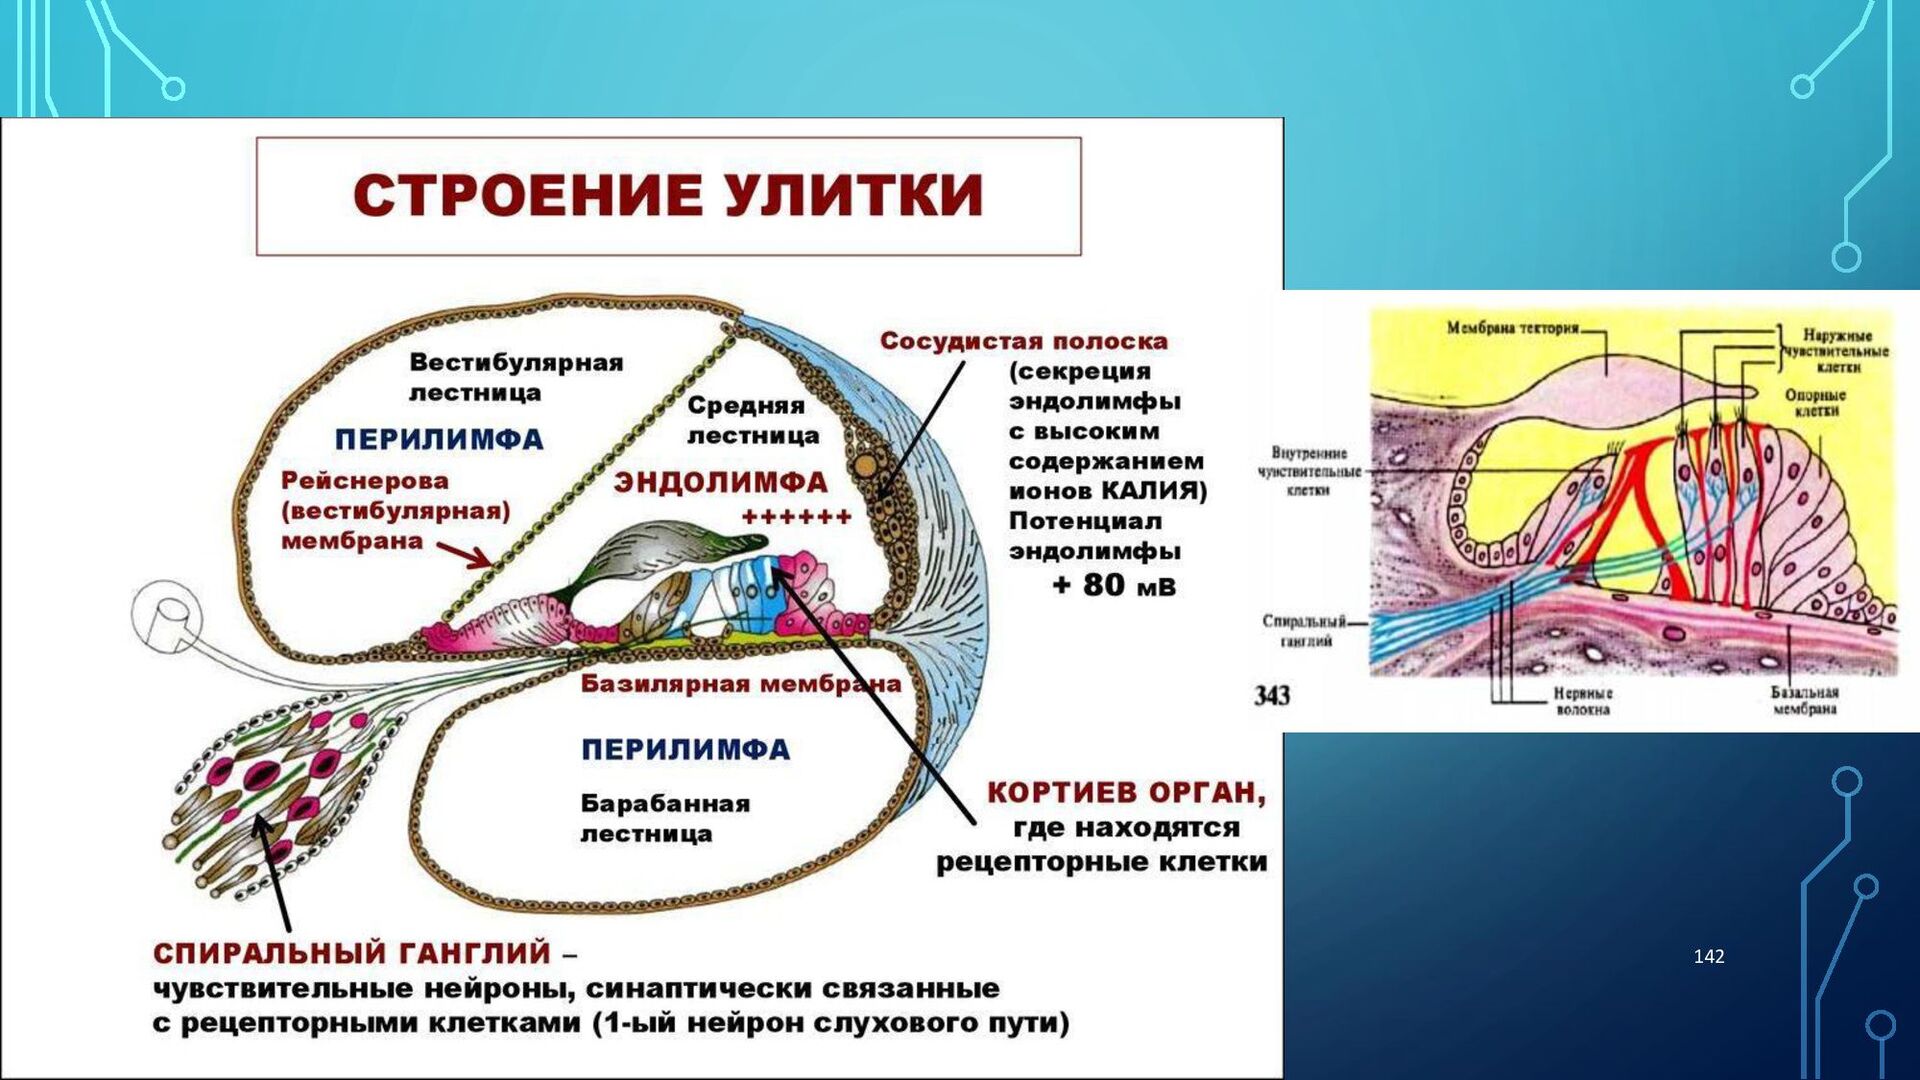 Эндолимфа улитки. Строение улитки внутреннего уха. Анатомические структуры внутреннего уха. Строение внутреннего уха эндолимфа. Строение и функции улитки внутреннего уха.